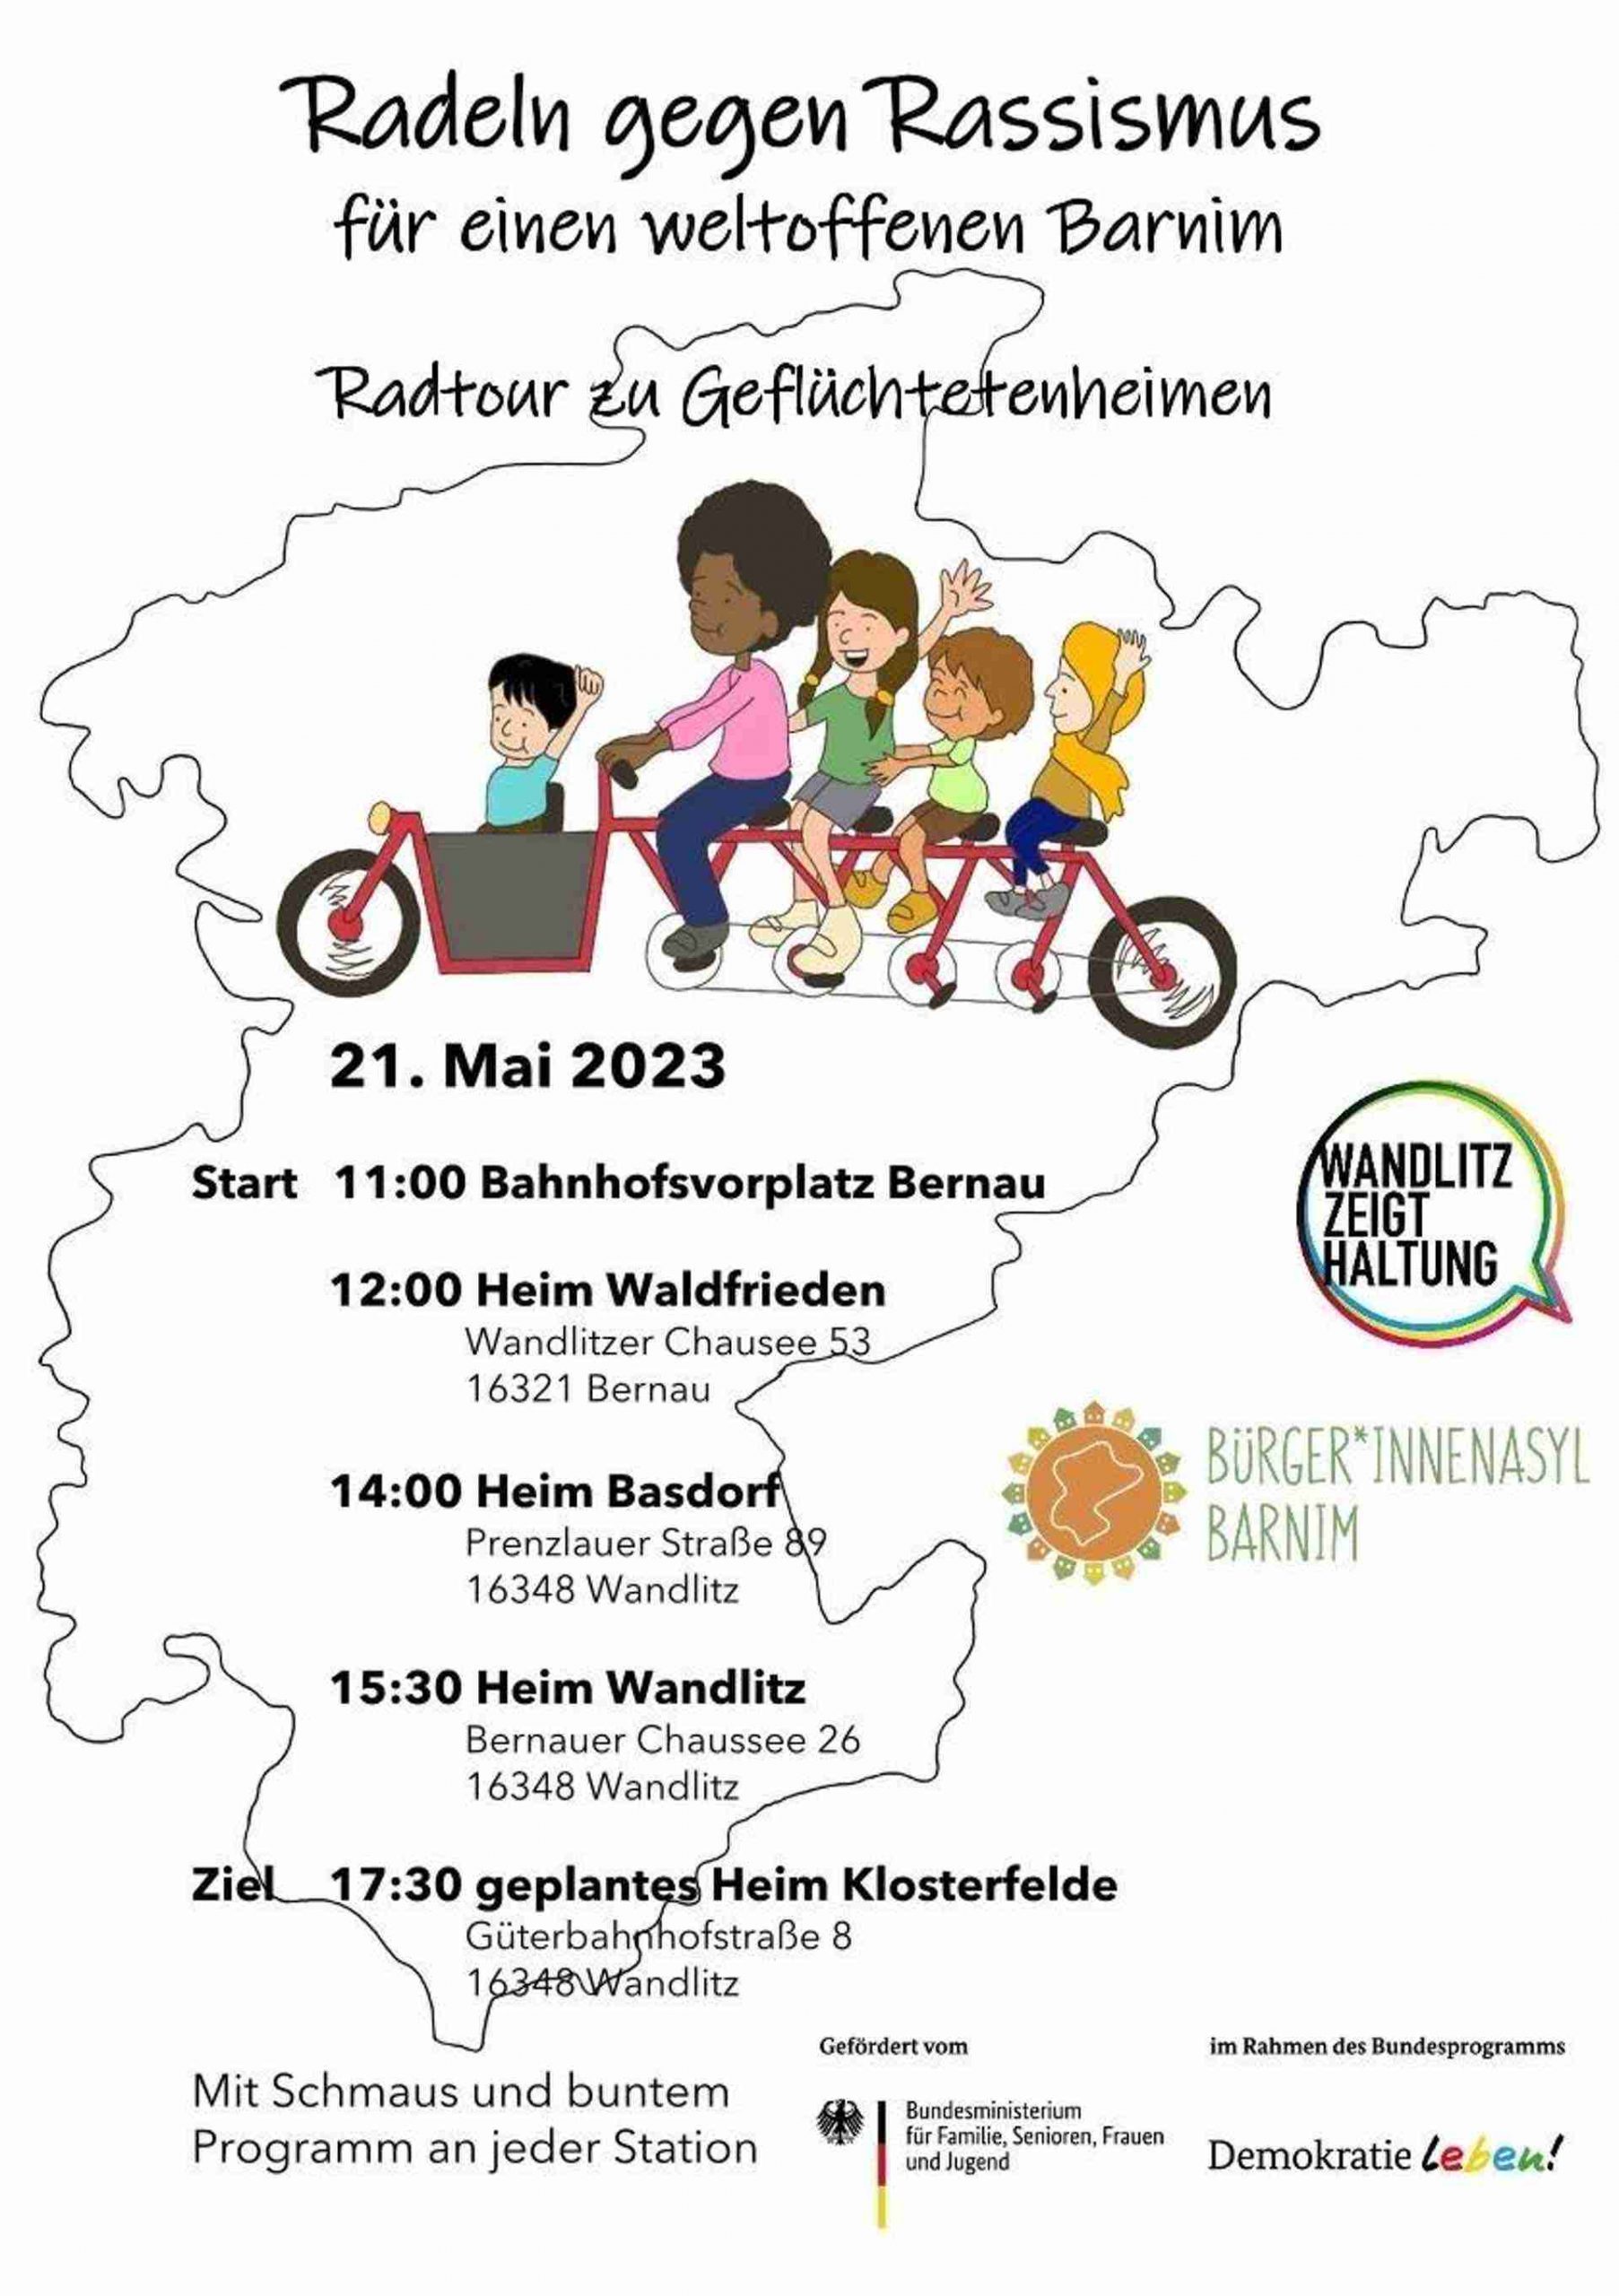 Bernau / Barnim: Am 21.5. findet eine solidarische Fahrradtour von Bernau über die Übergangswohnheime in Bernau Waldfrieden, Basdorf und Wandlitz zum geplanten Übergangswohnheim in Klosterfelde statt.